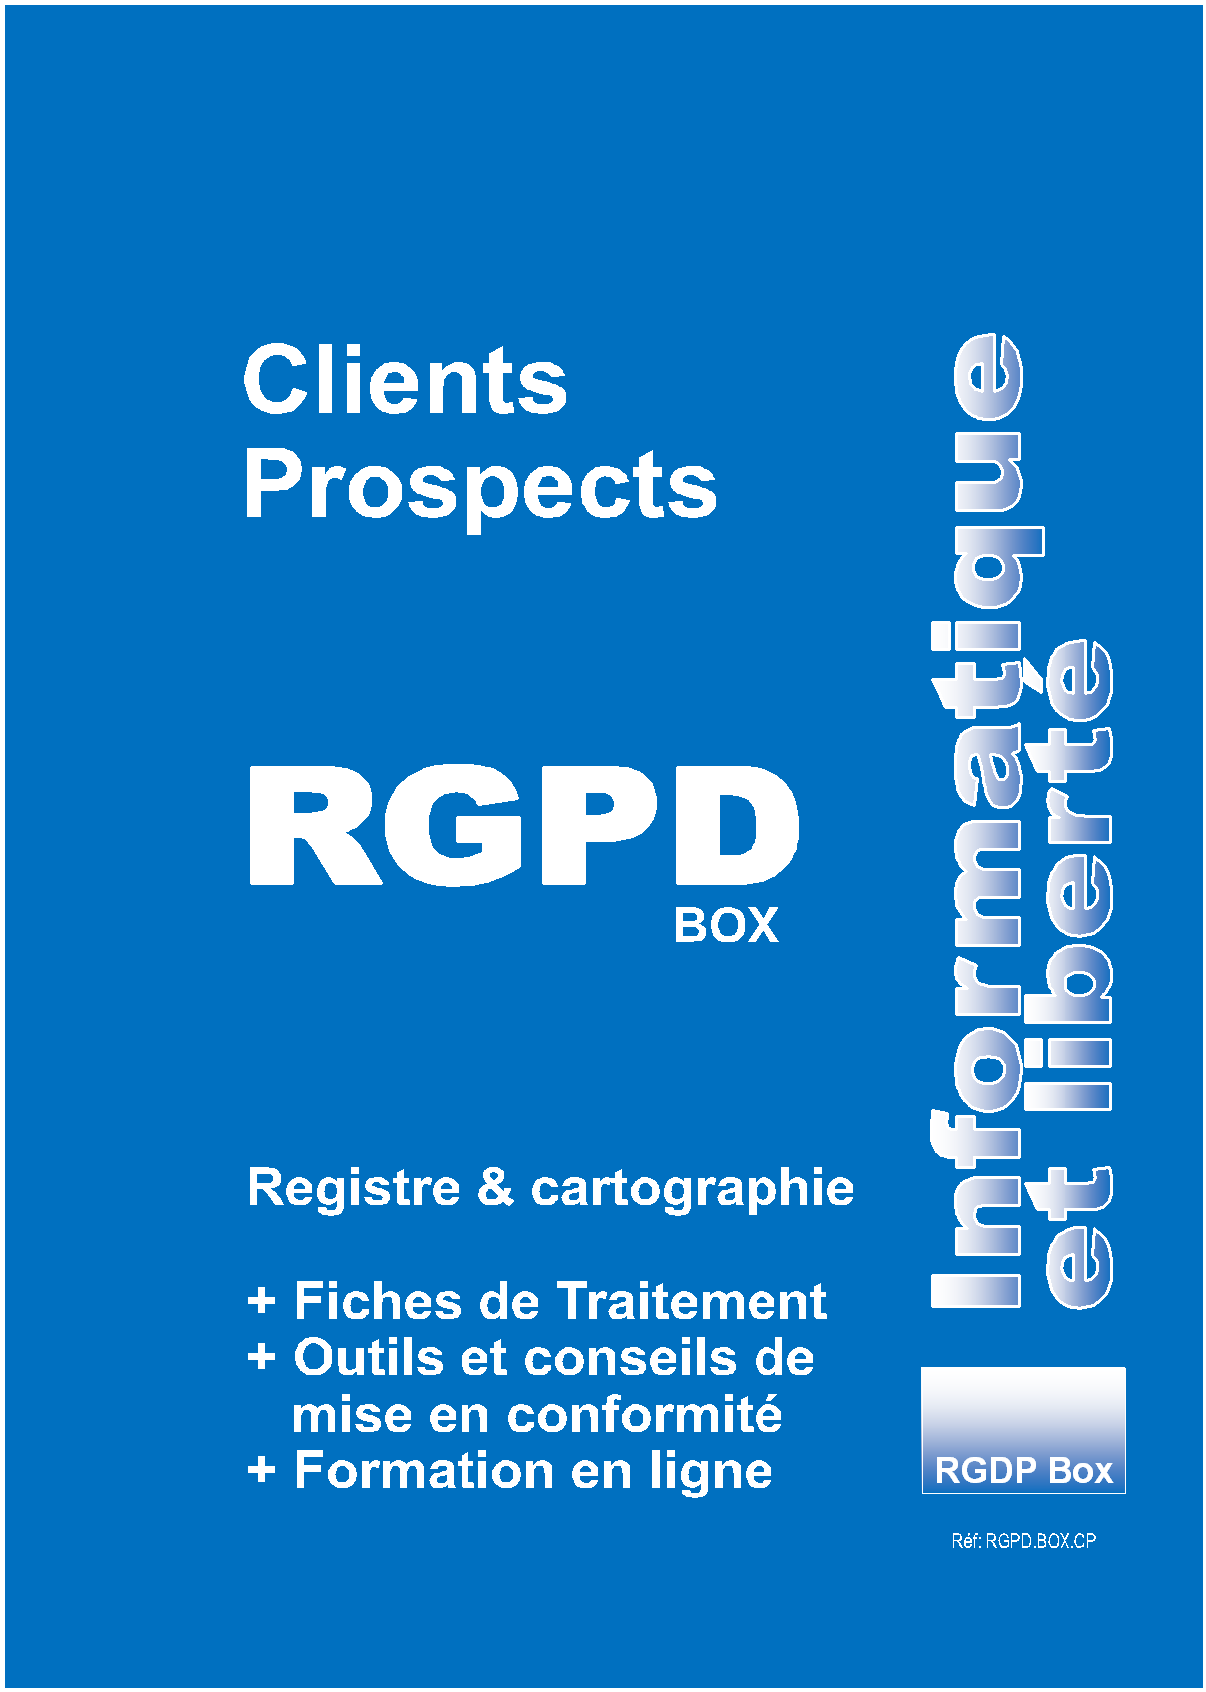 RGPD Clients et Prospects